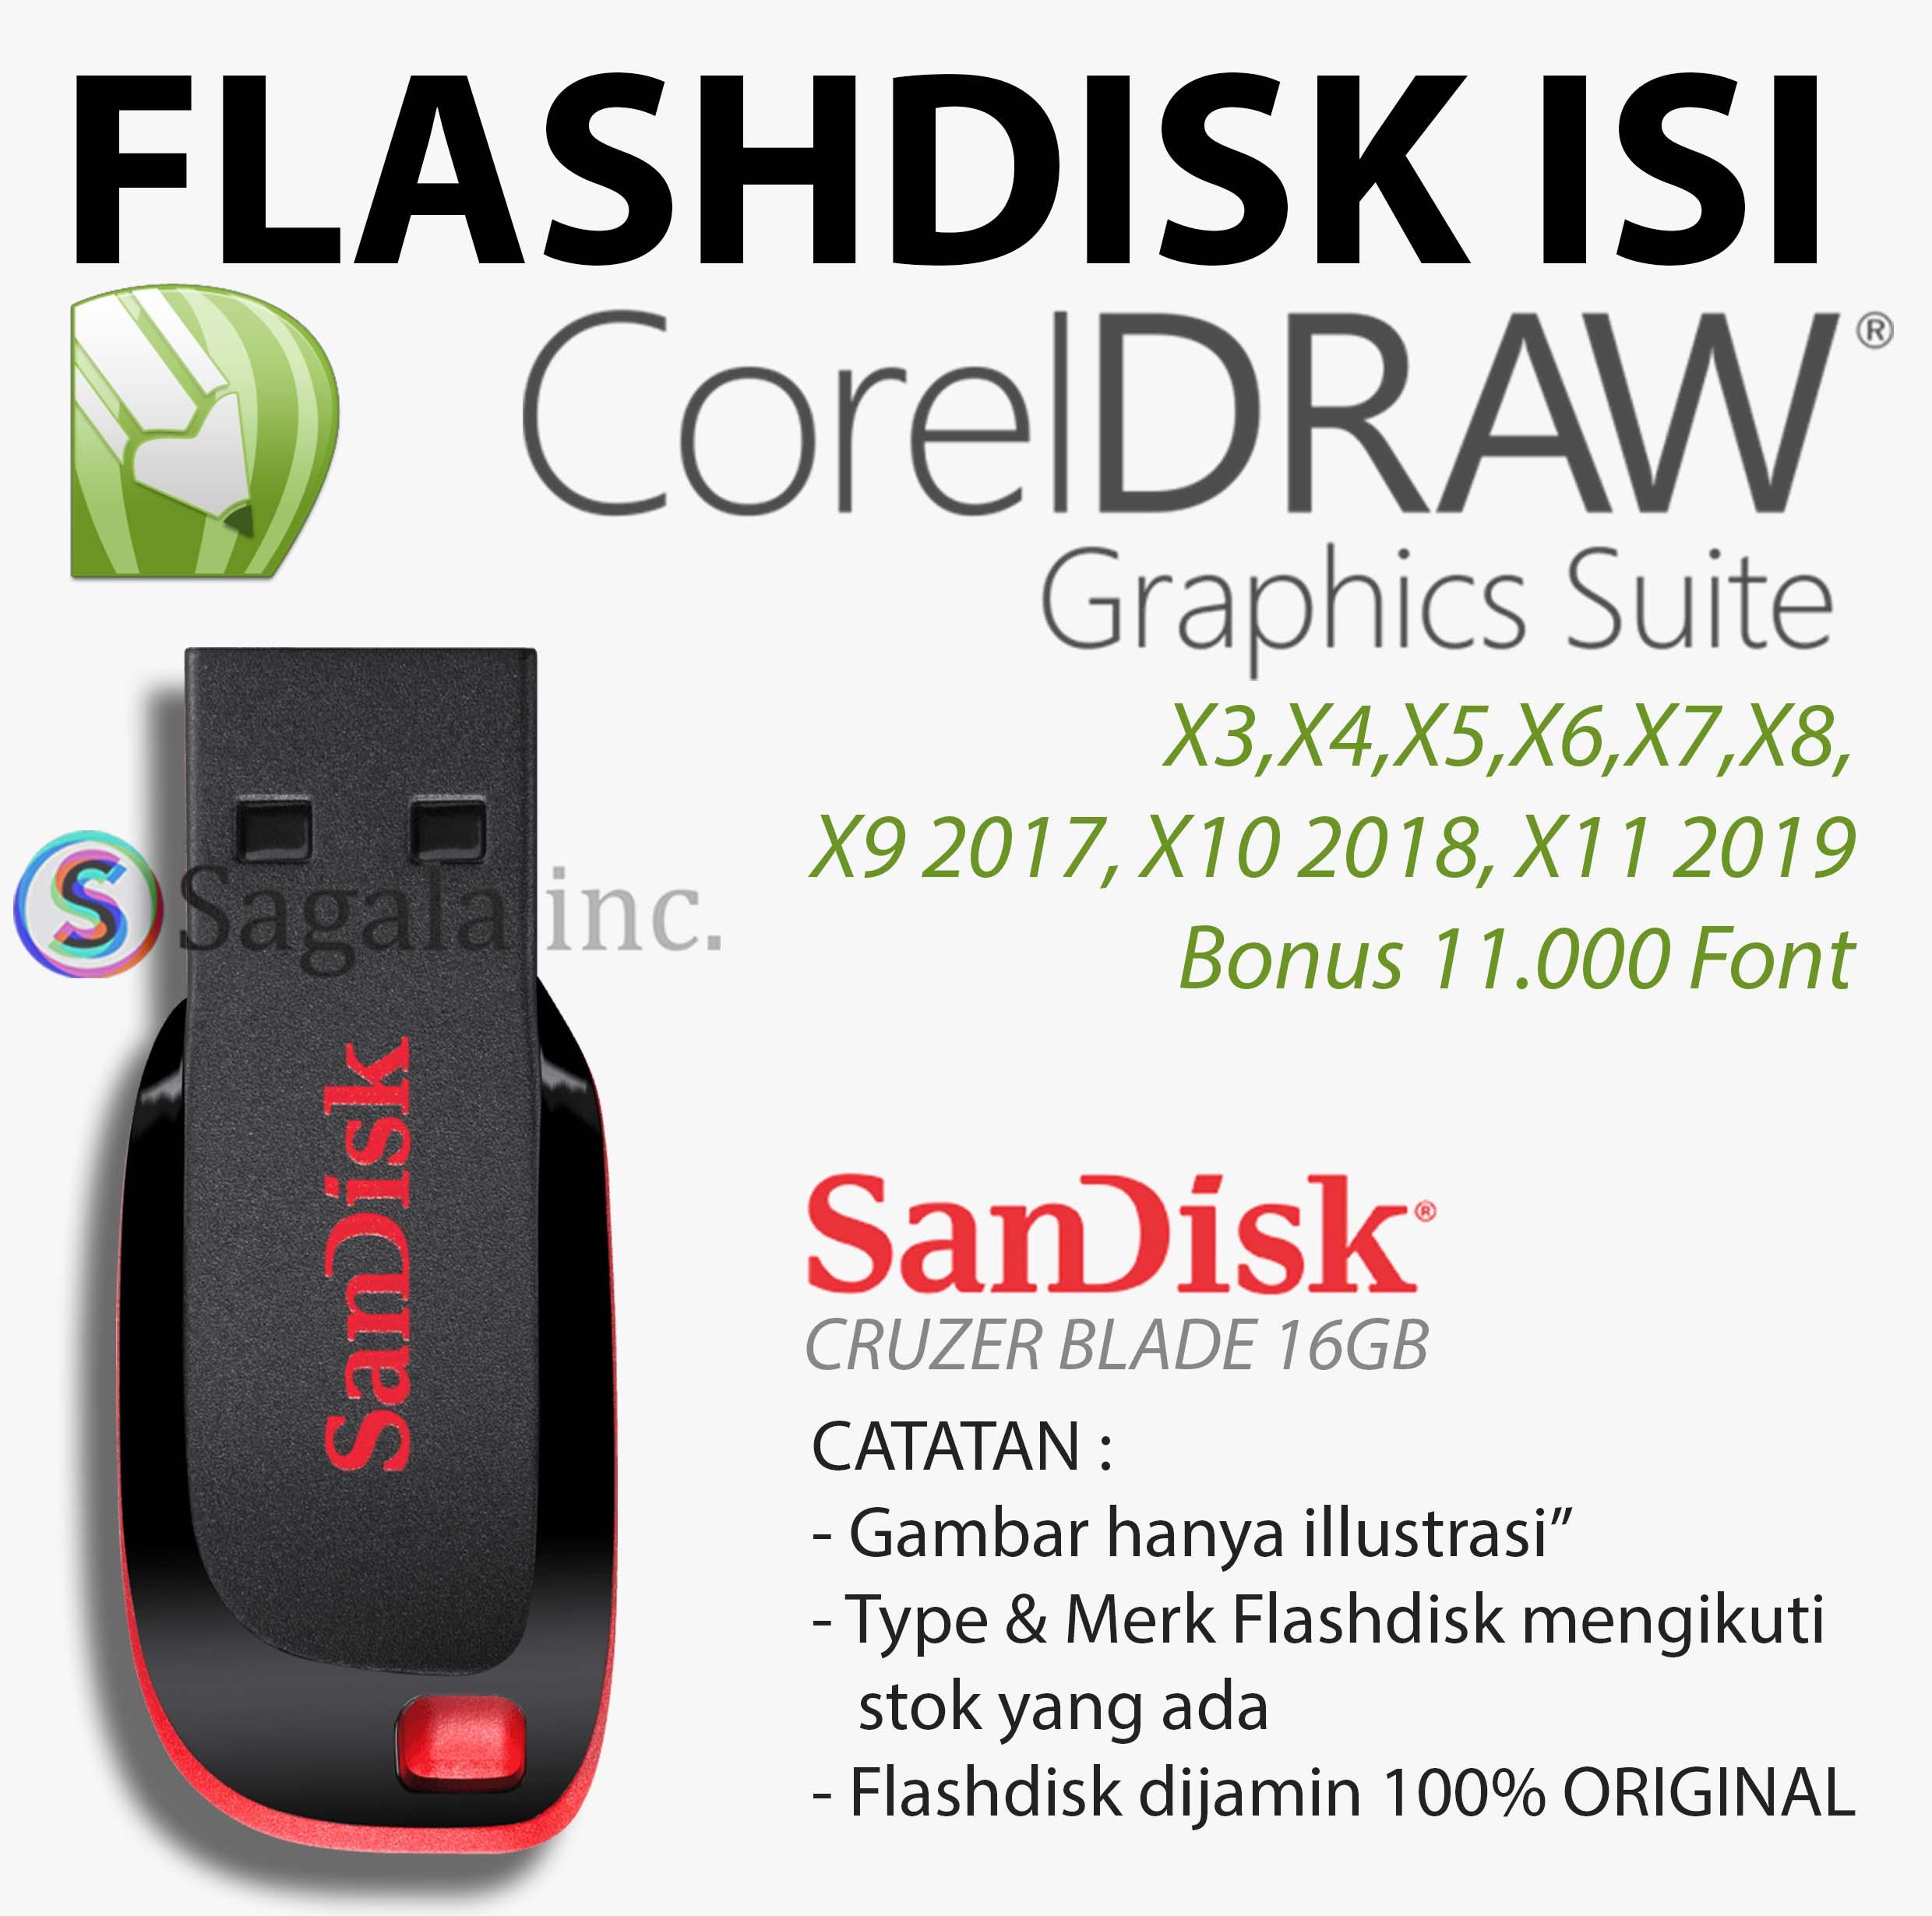 Flashdisk Isi Corel Draw X3 X4 X5 X6 X7 X8 X9 X10 2018 X11 2019 Bonus